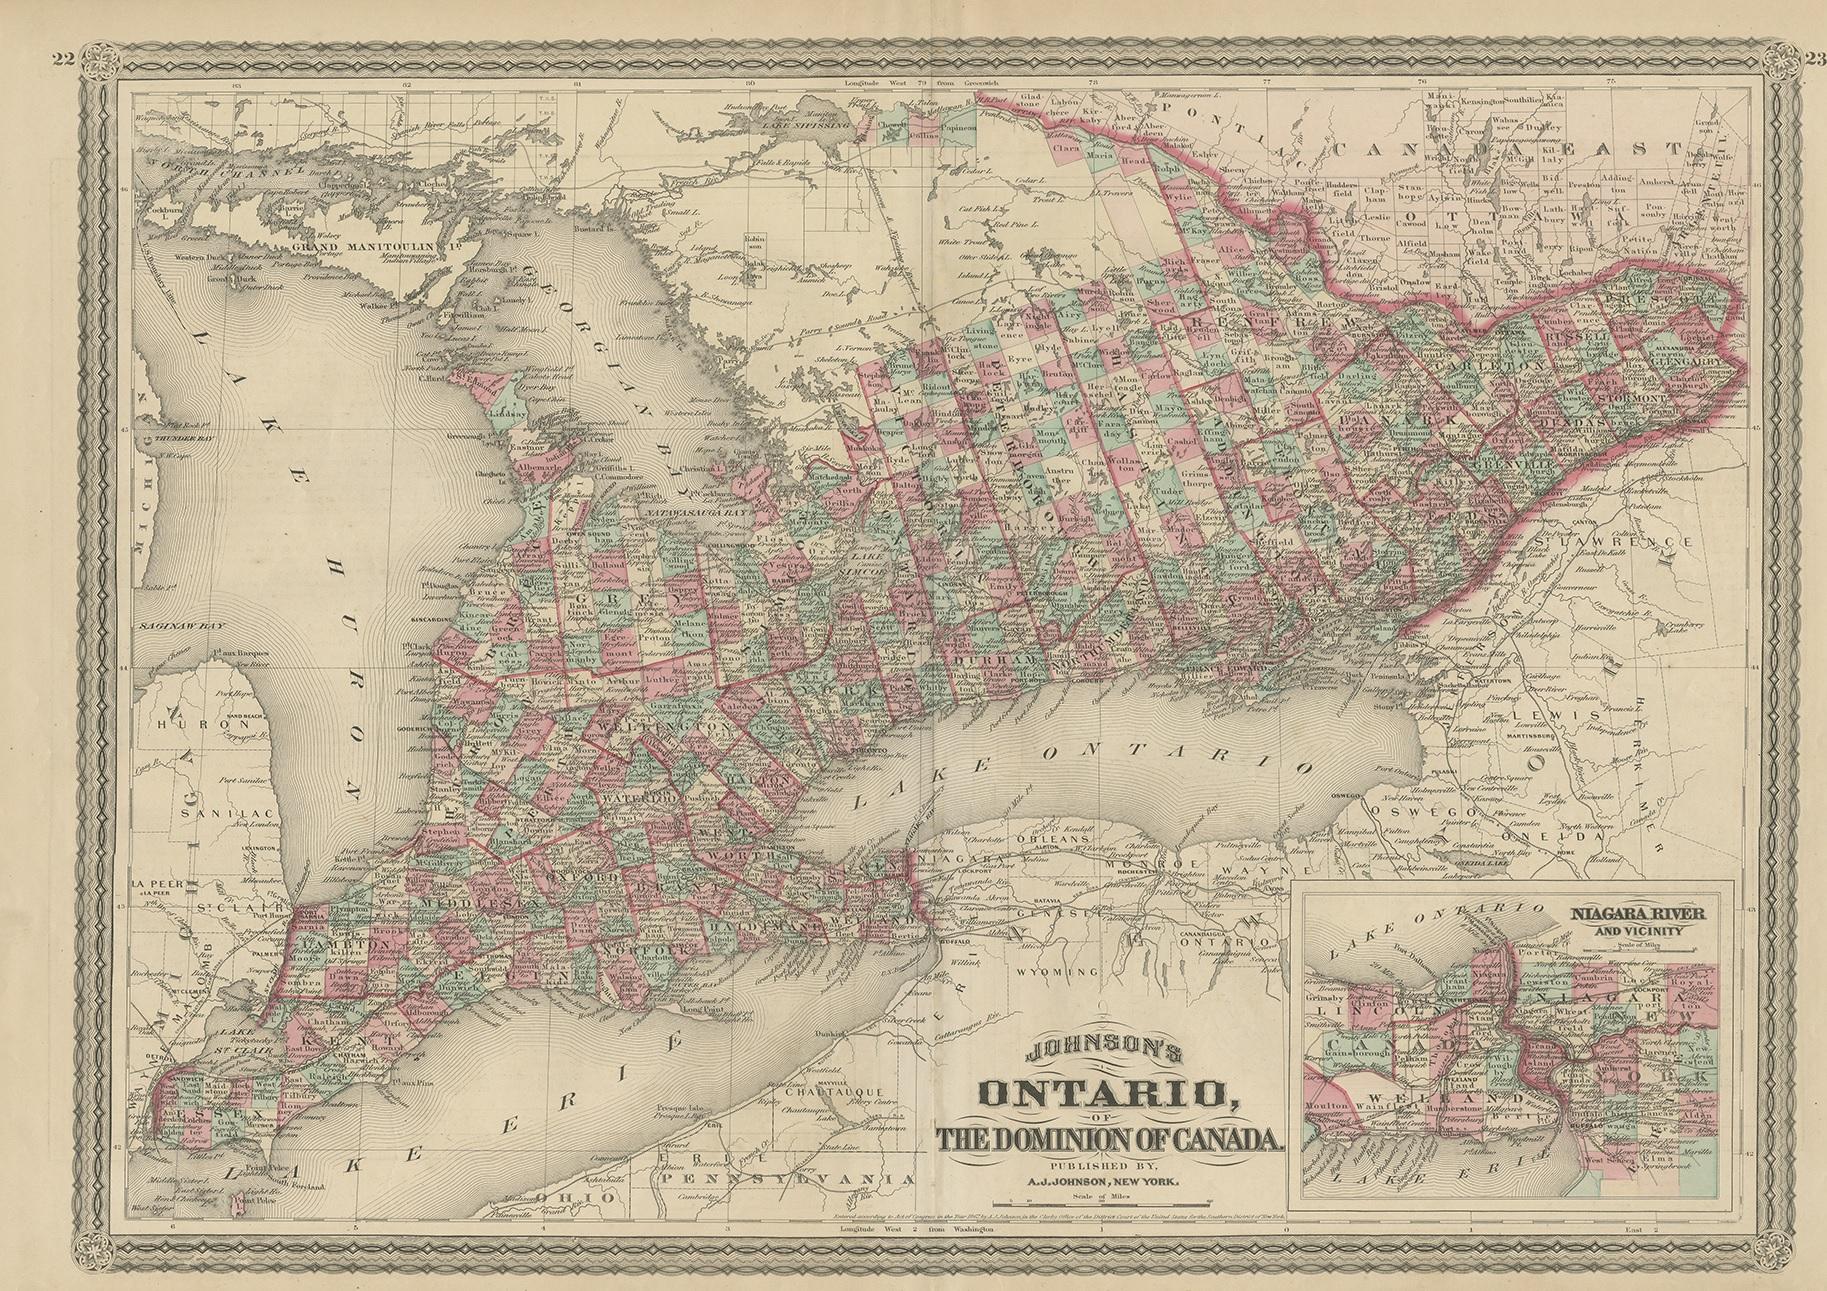 Carte ancienne intitulée 'Johnson's Ontario, of the dominion of Canada (...)'. Carte originale de l'Ontario, Canada, avec une carte en médaillon de la rivière Niagara et de ses environs. Cette carte provient du 